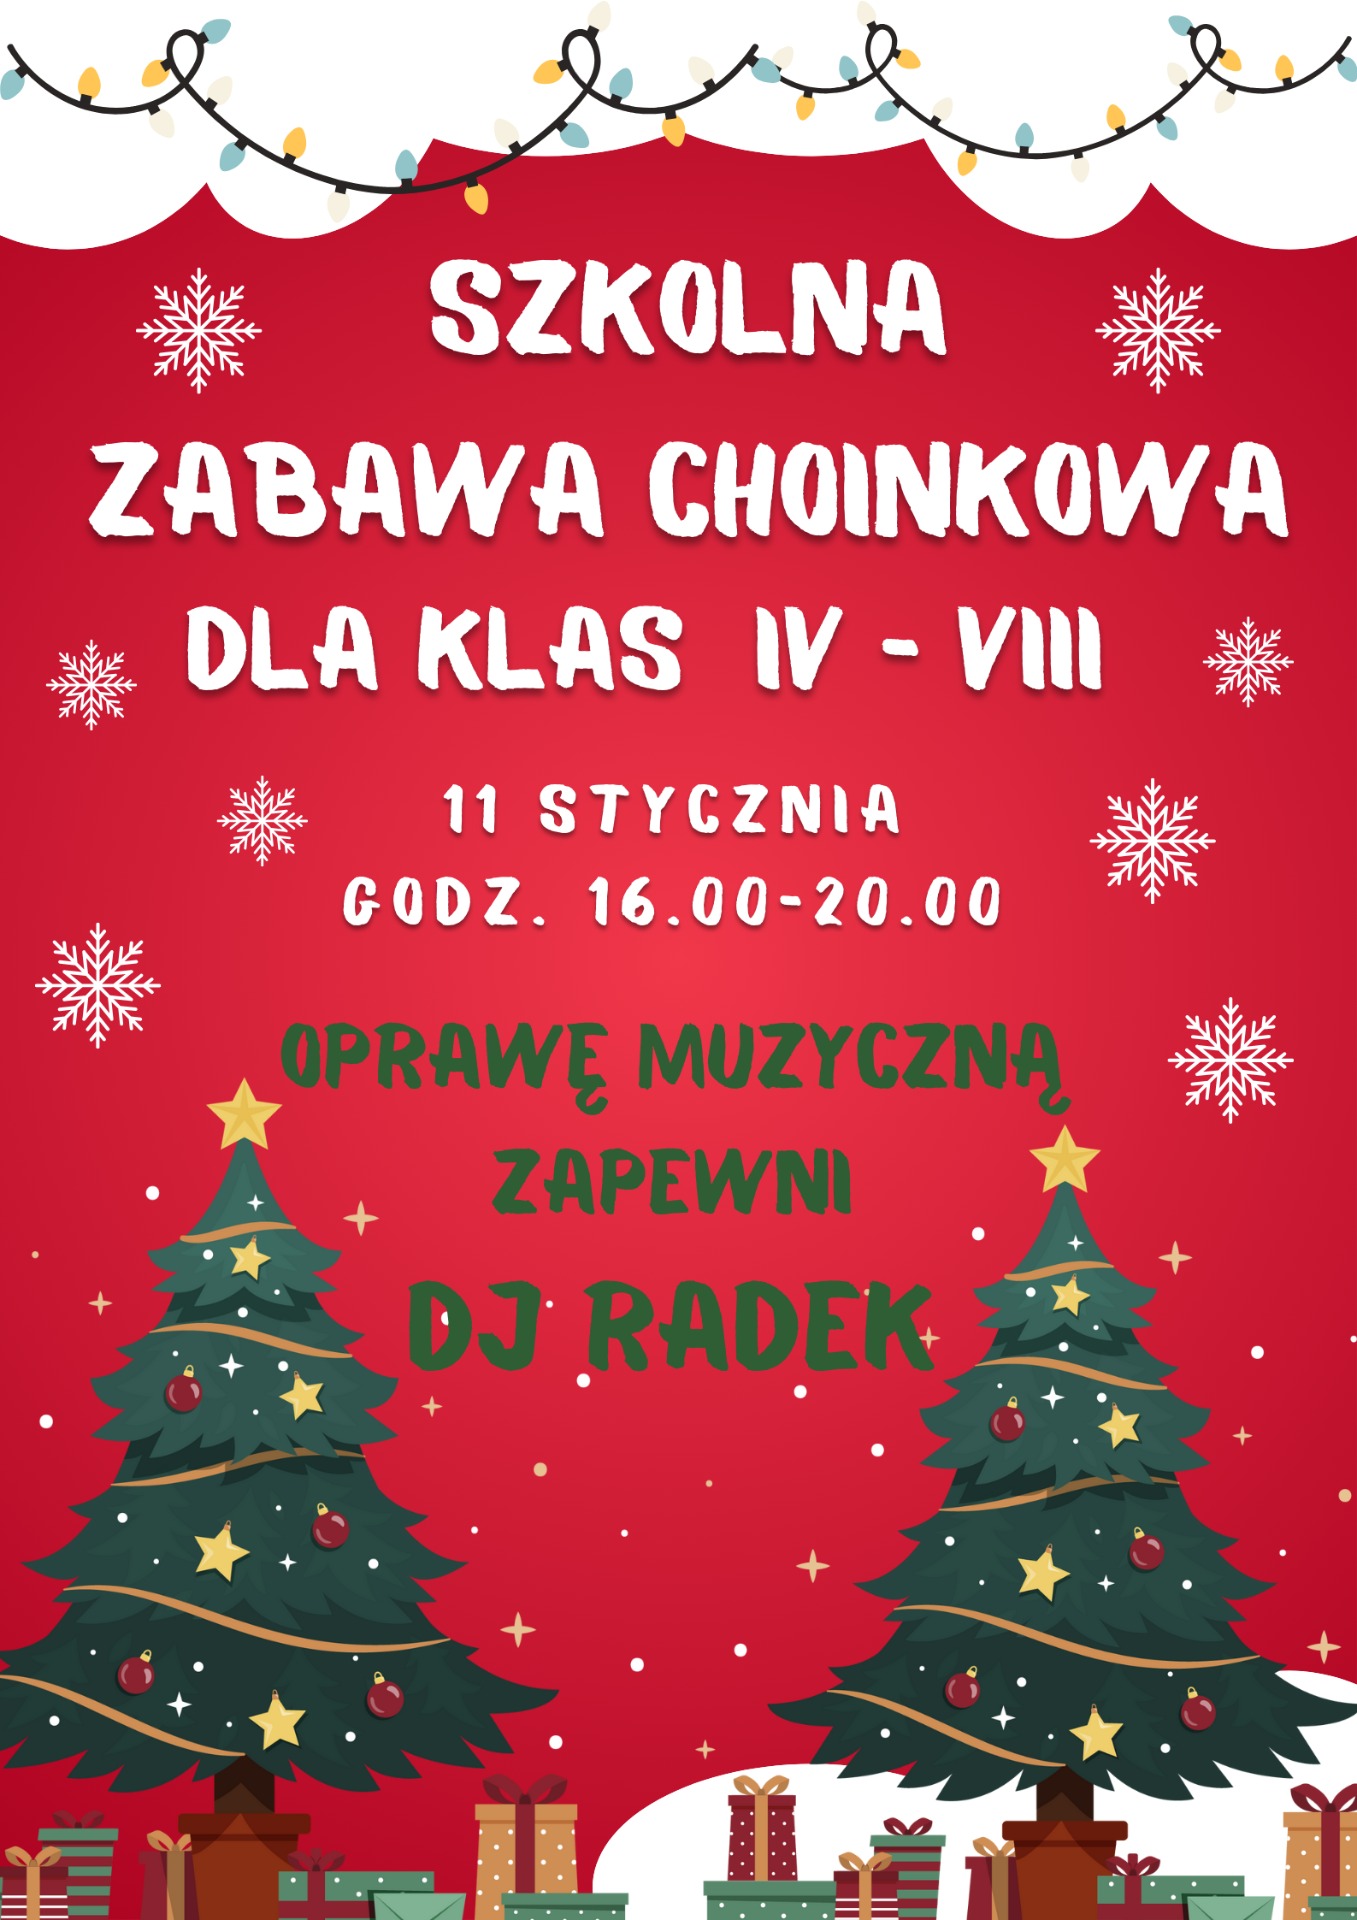 Plakat "Zabawa choinkowa" 